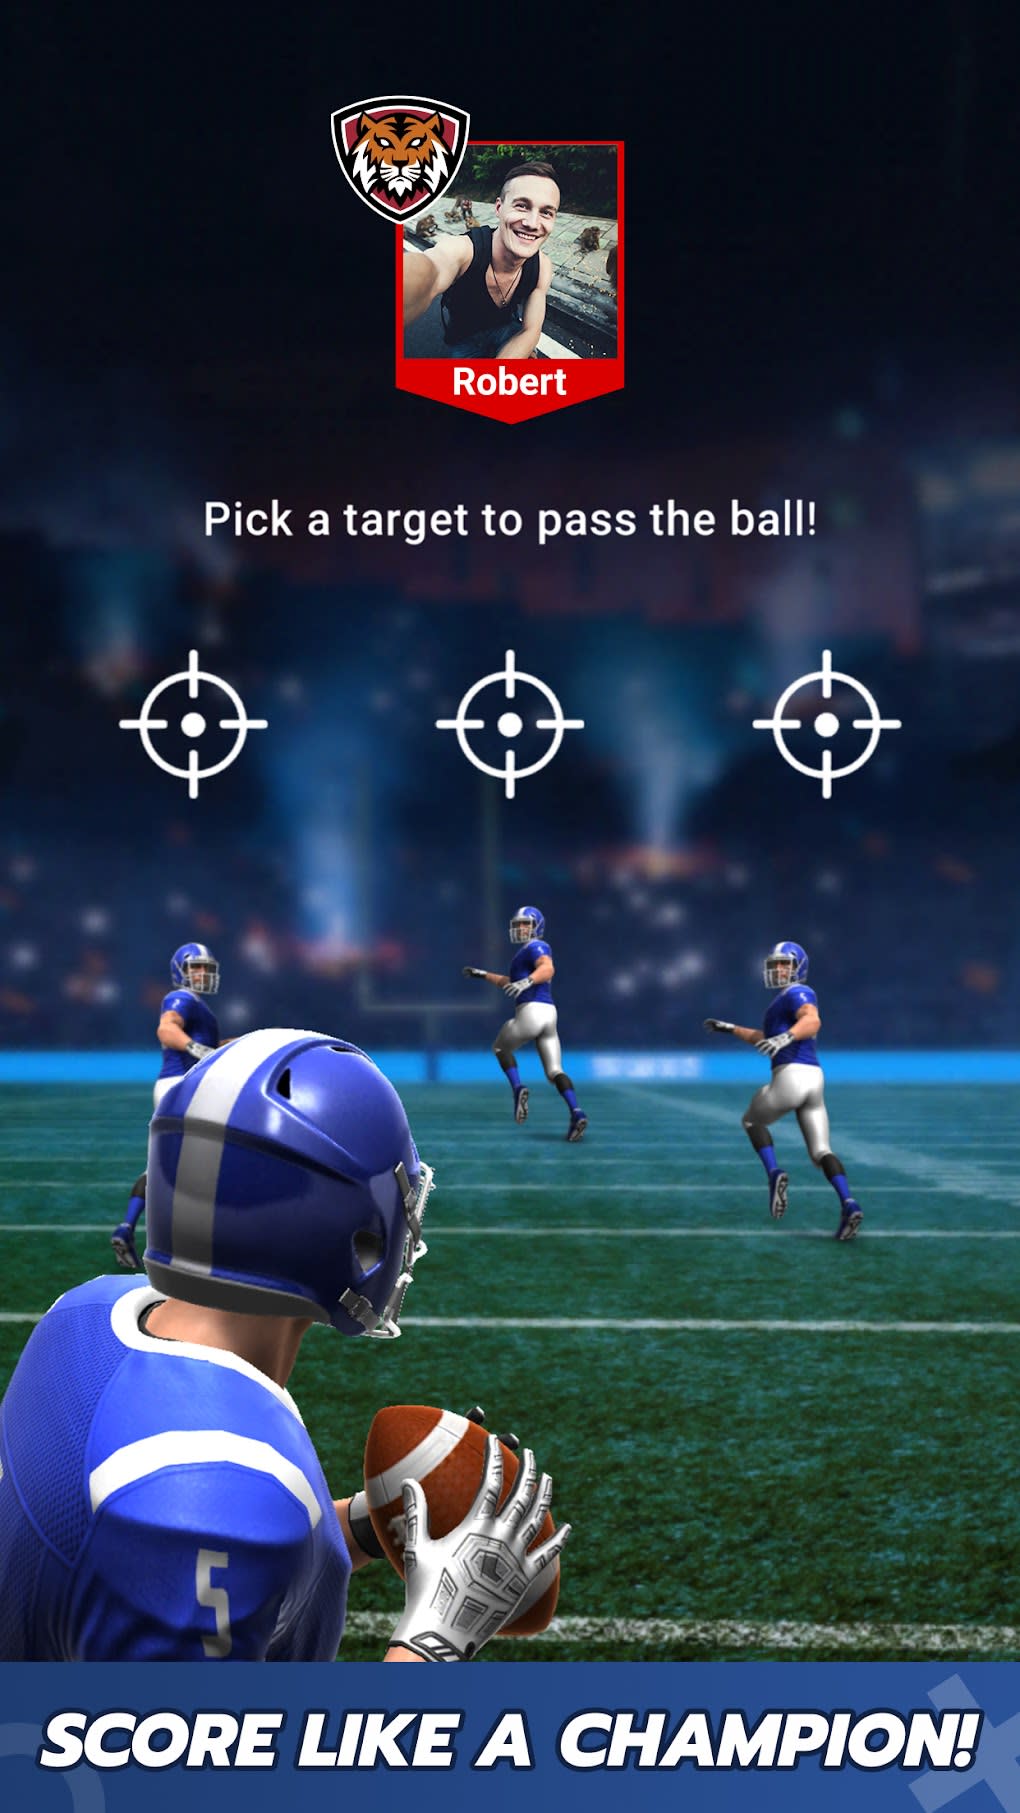 Adivinhe o jogador de futebol 2023 versão móvel andróide iOS apk